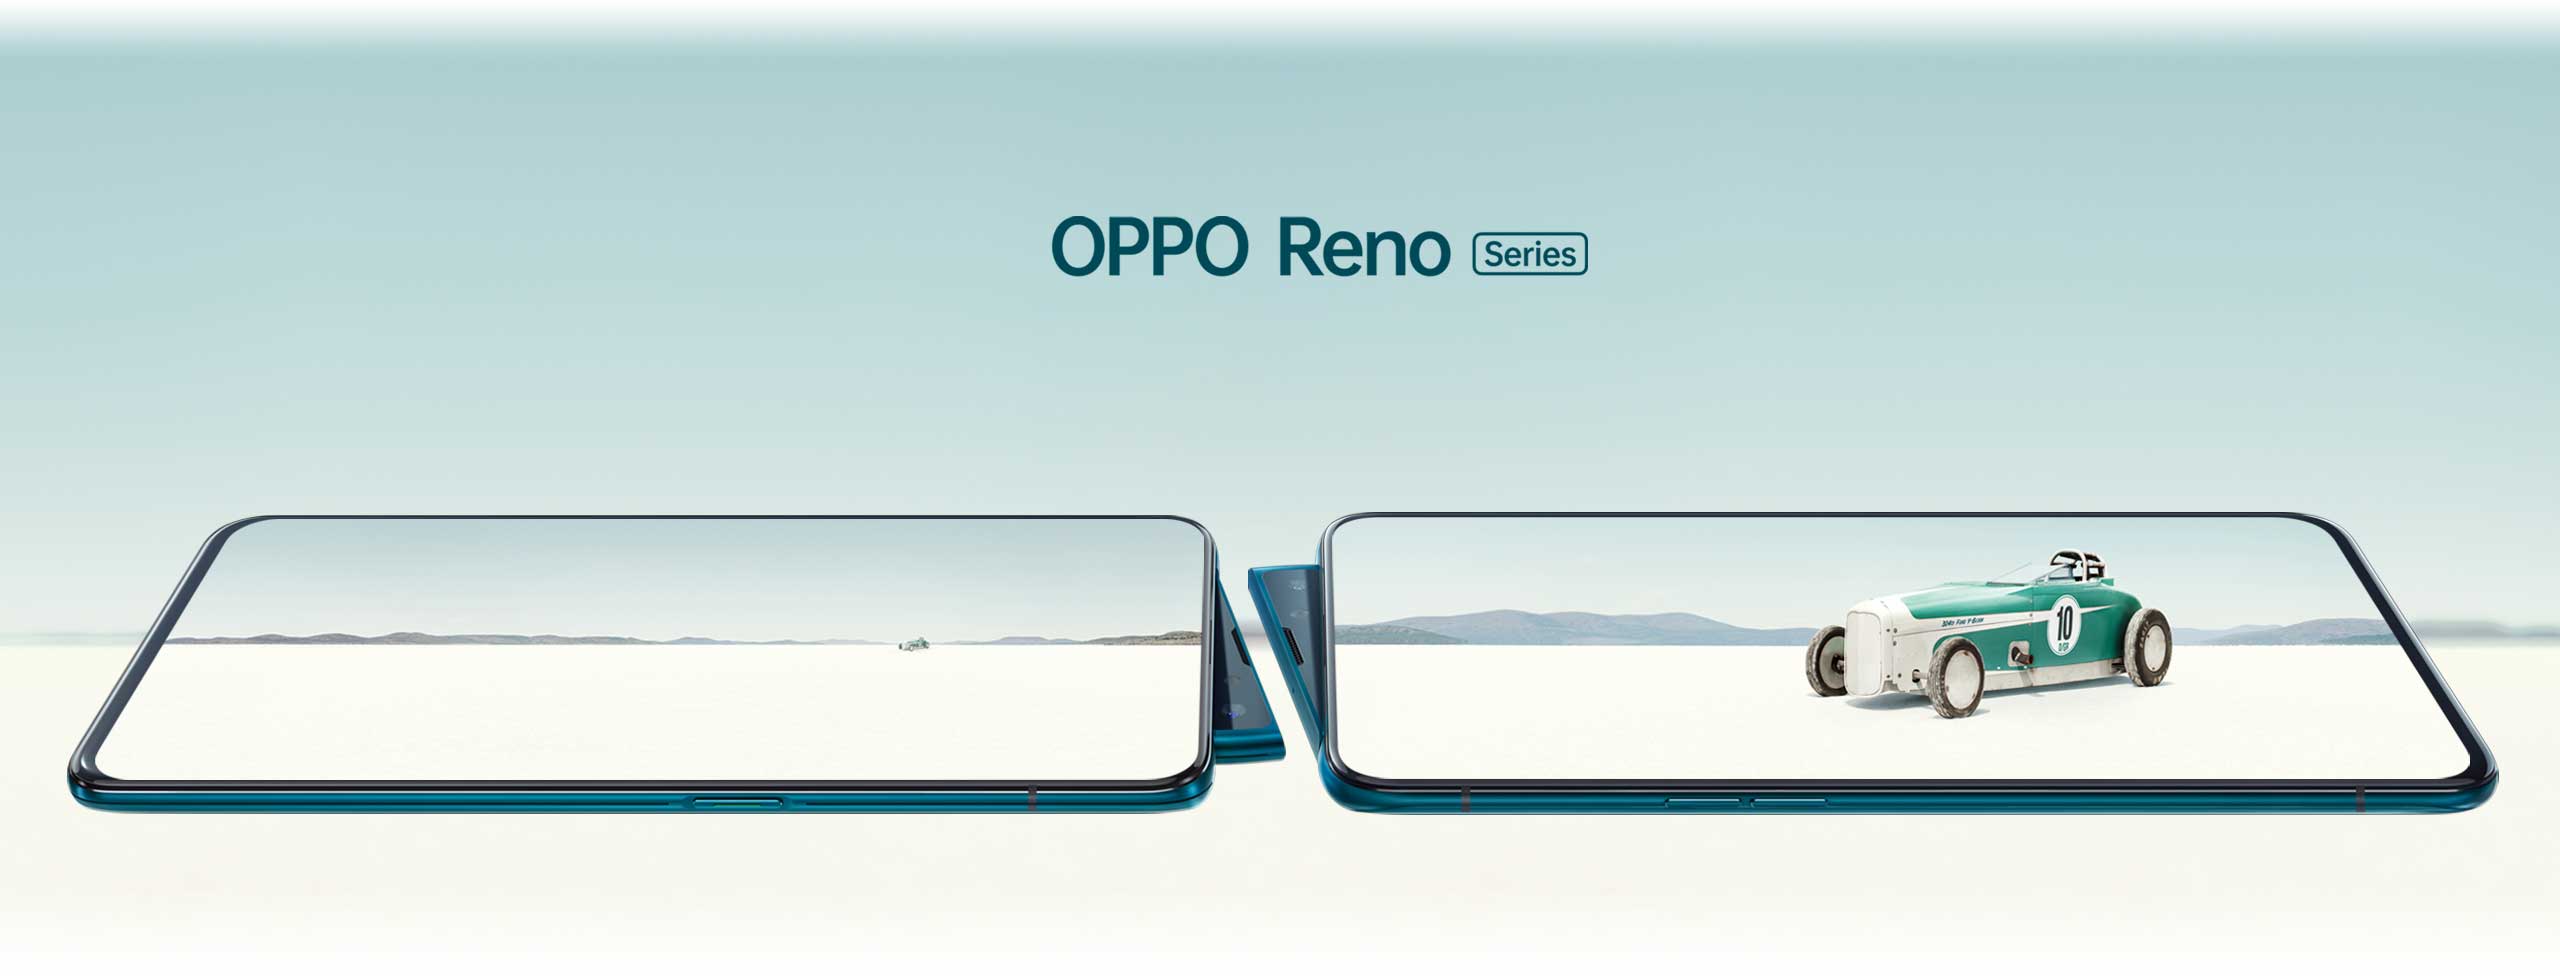 OPPO Reno: Smartphone sinh ra để truyền cảm hứng cho giới trẻ đam mê sáng tạo - 8